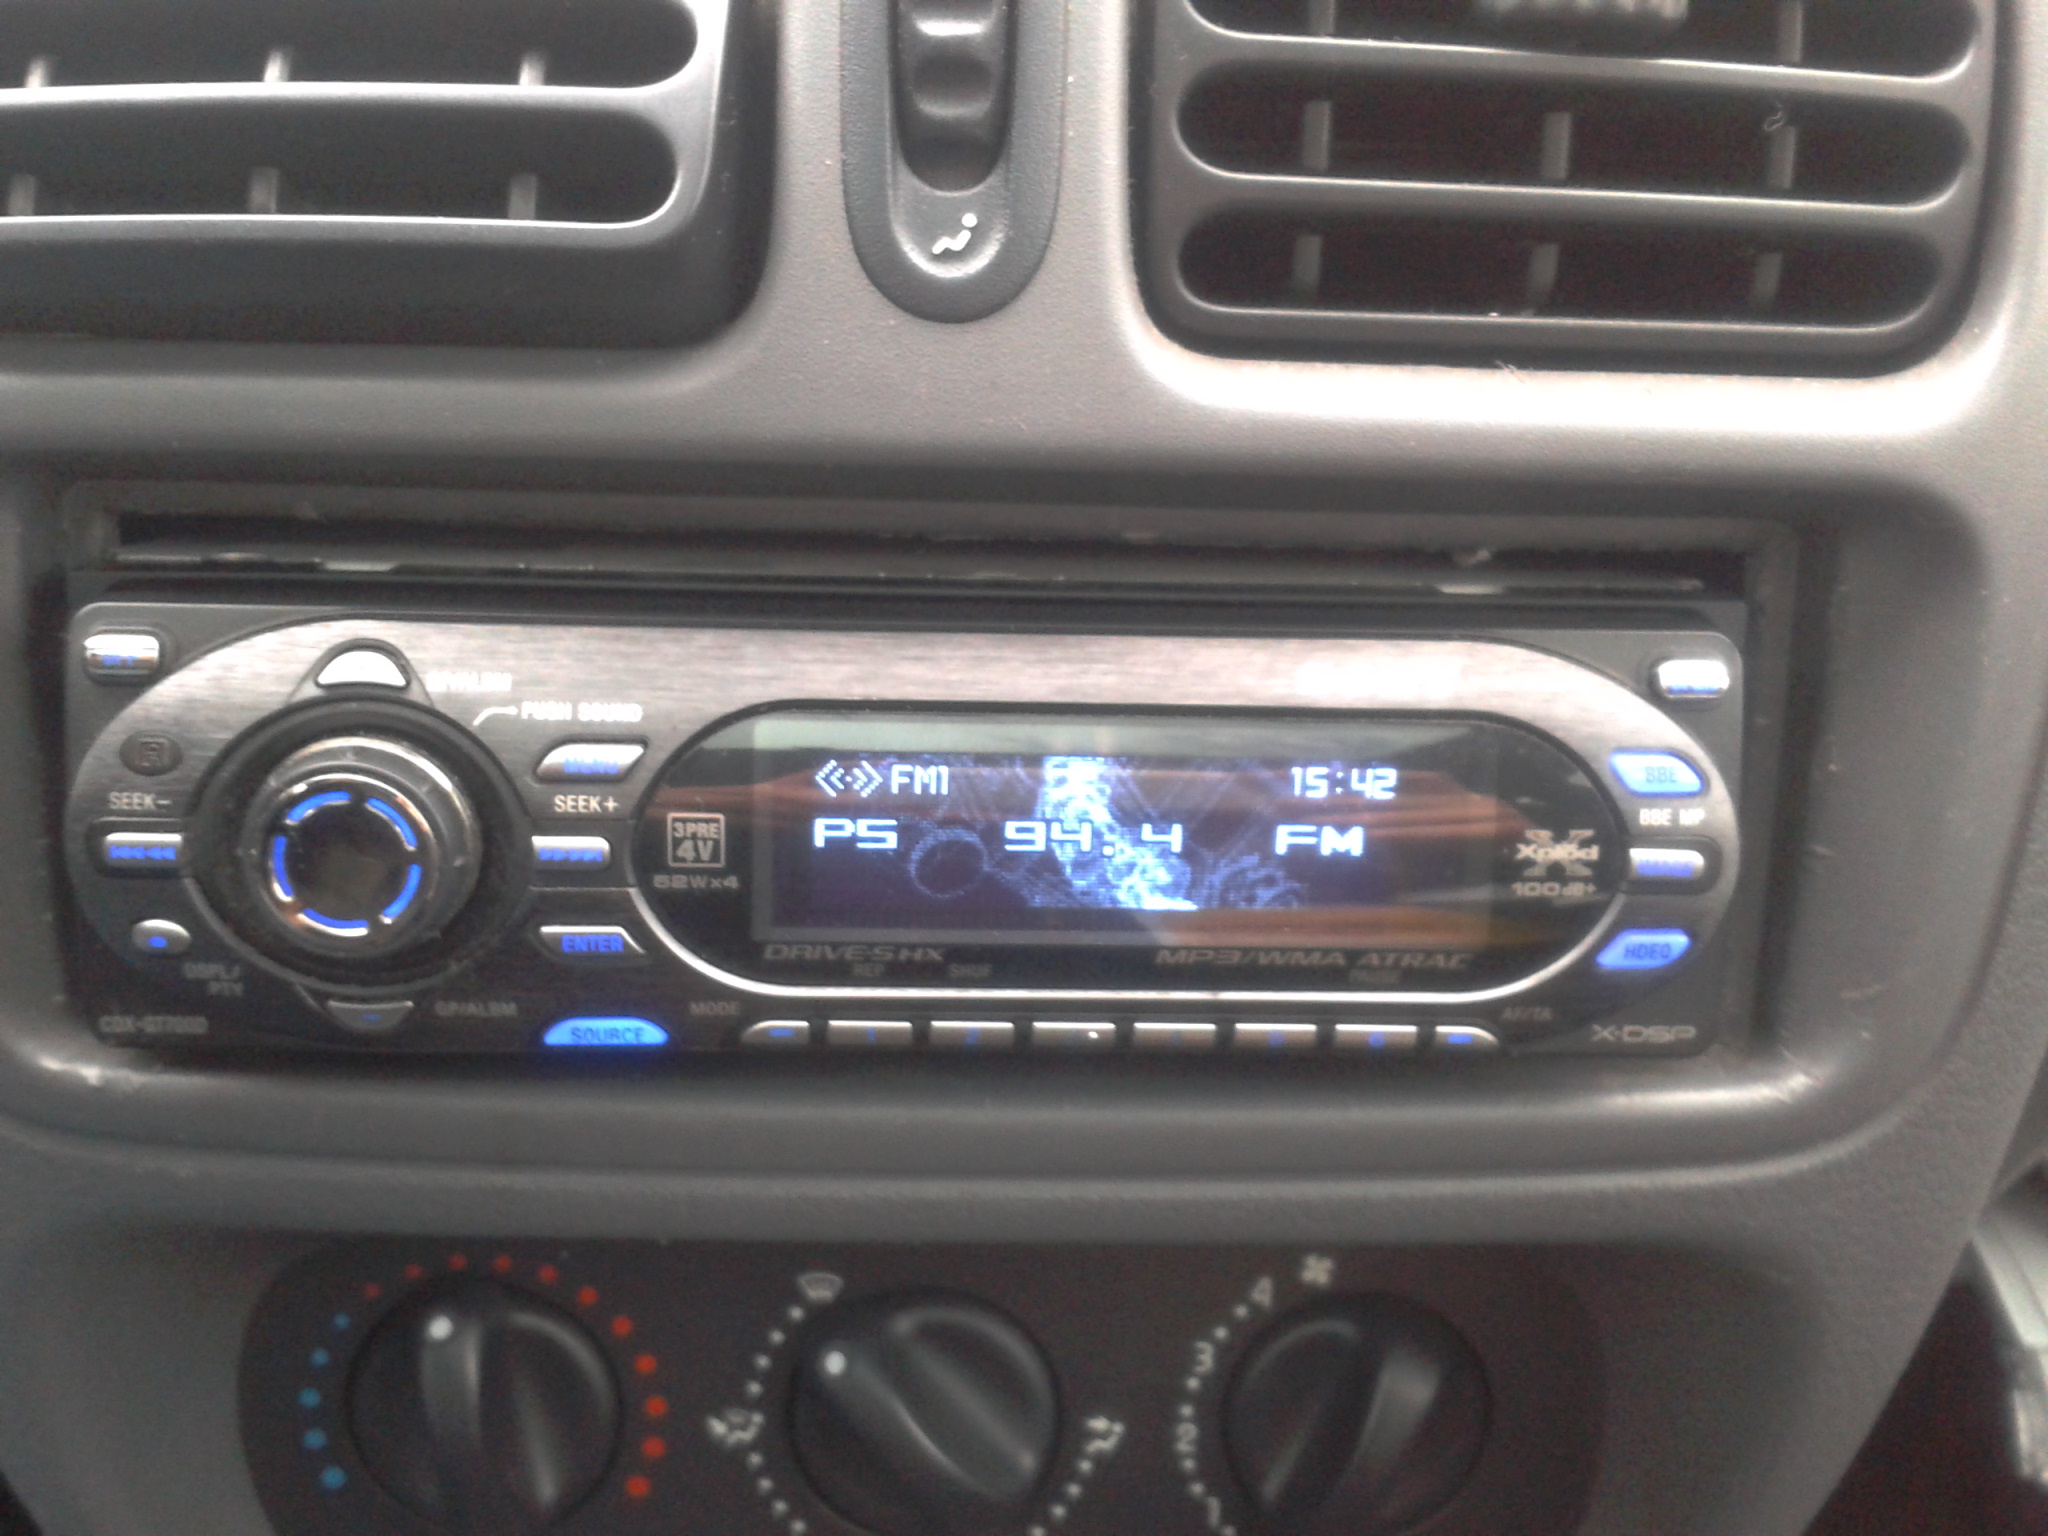 Sony CDXGT700D i Renault clio II podłączenie radia pod